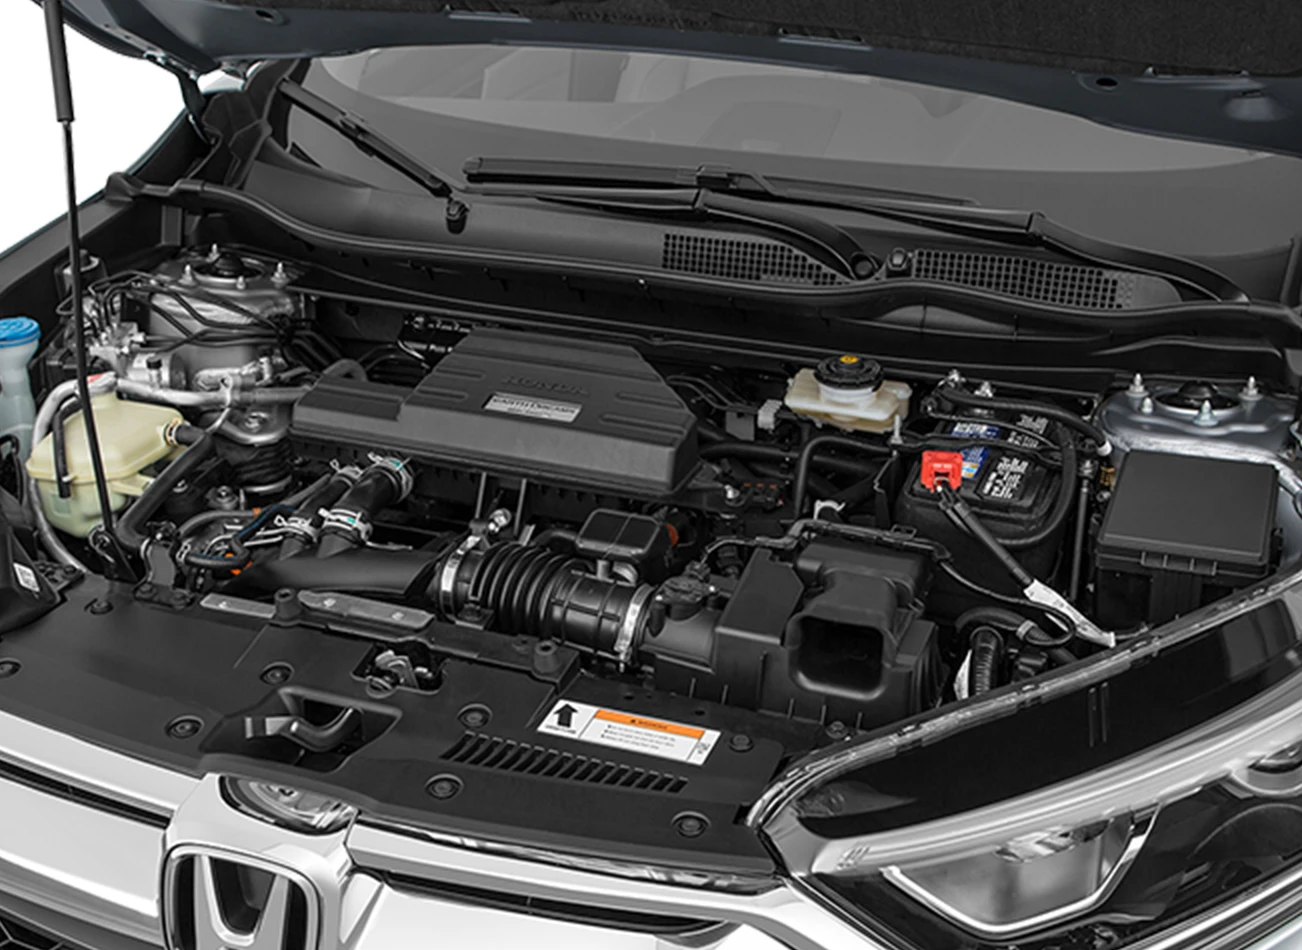 2019 Honda CR-V: Reviews, Photos, and More: Reasons to Buy #3 | CarMax